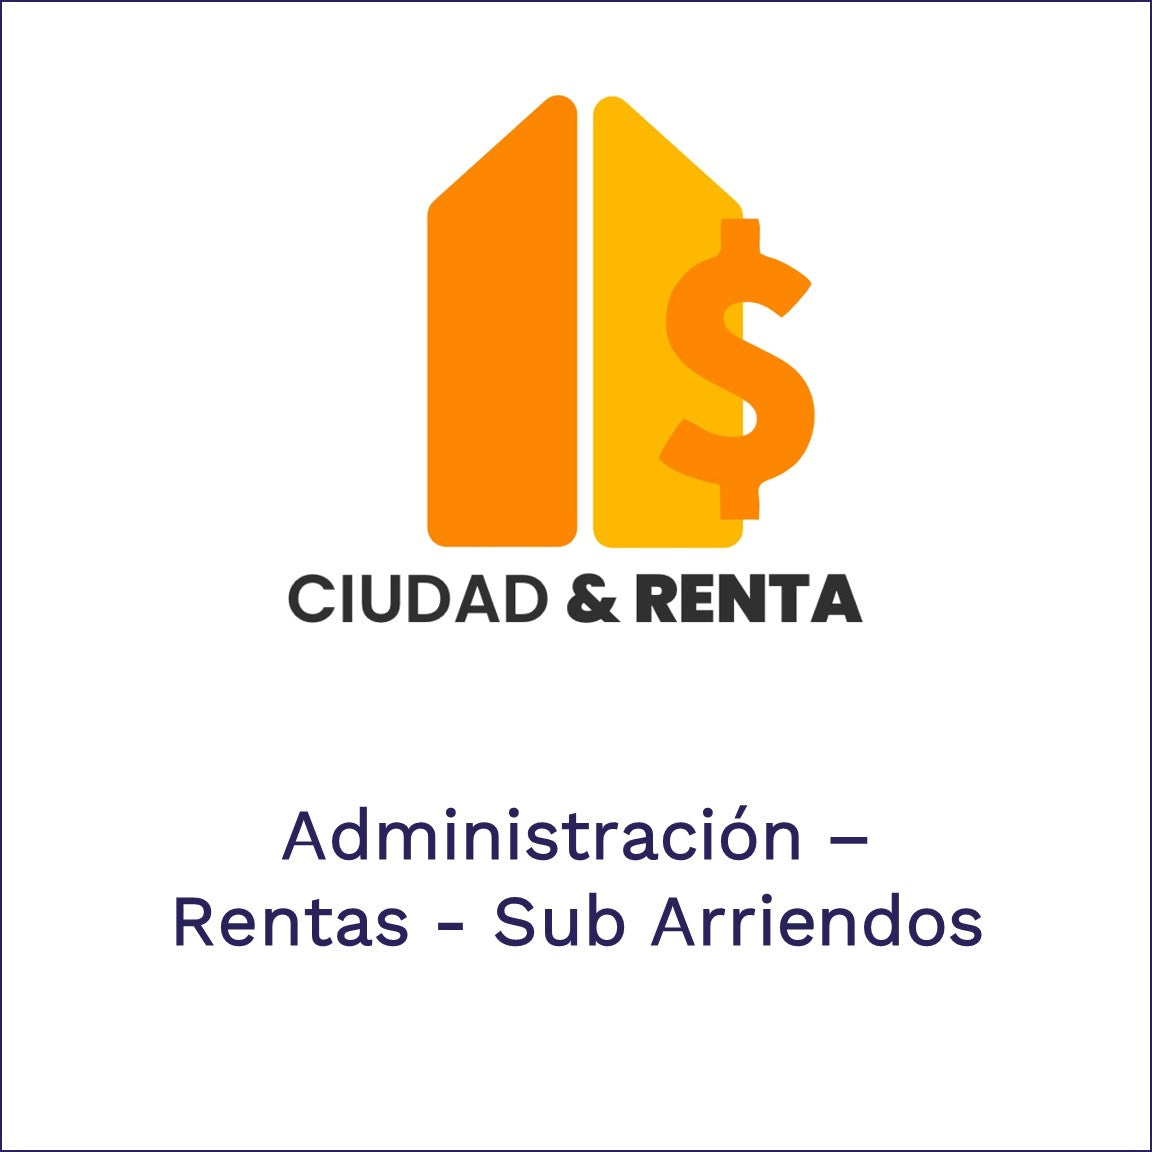 Ciudad & Renta - Administracion, rentas y subarriendos